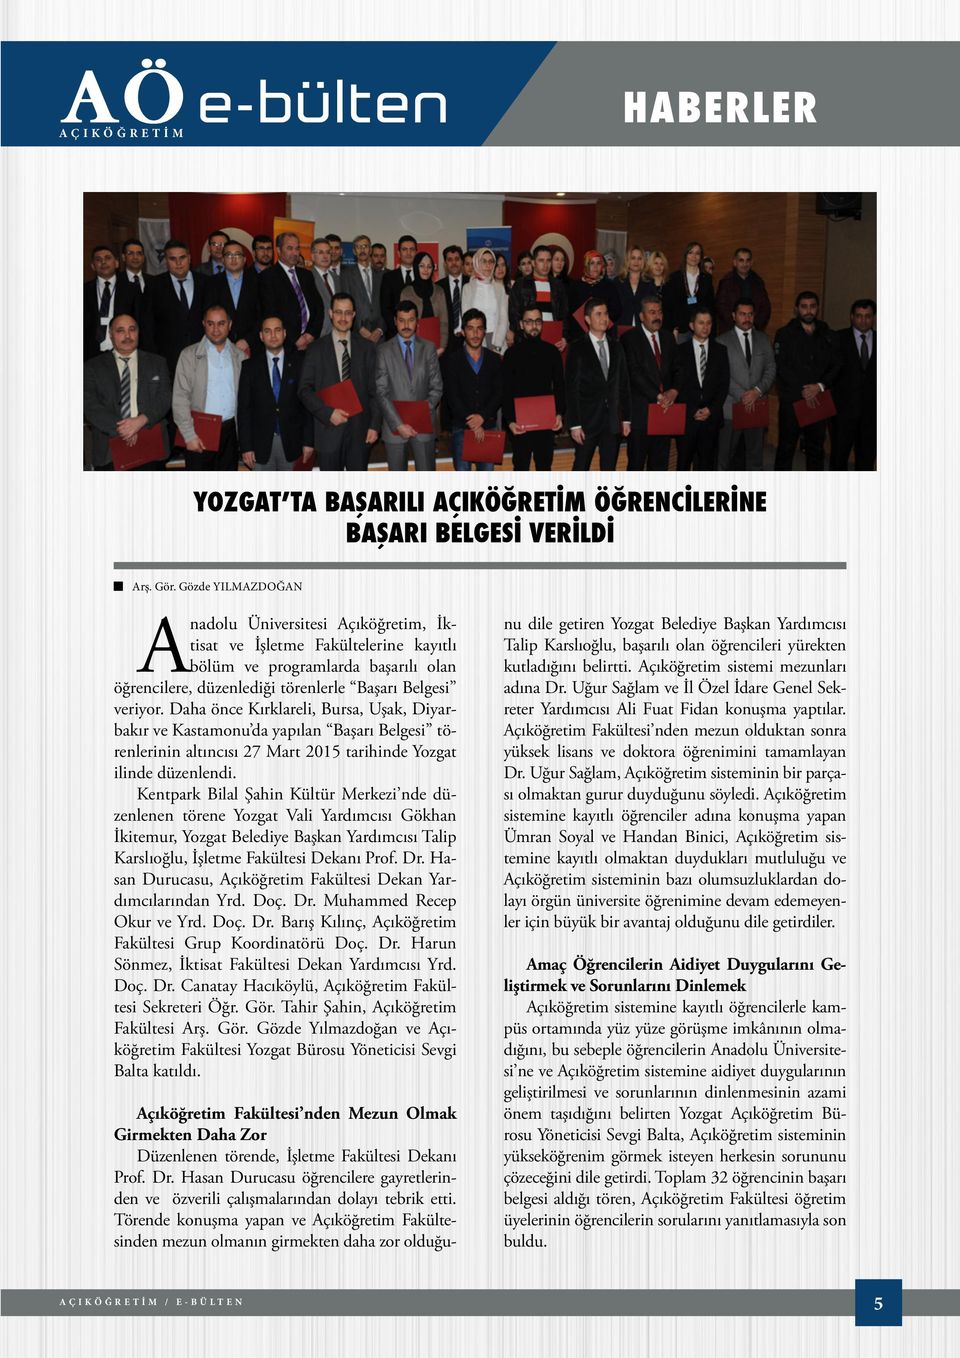 Daha önce Kırklareli, Bursa, Uşak, Diyarbakır ve Kastamonu da yapılan Başarı Belgesi törenlerinin altıncısı 27 Mart 2015 tarihinde Yozgat ilinde düzenlendi.